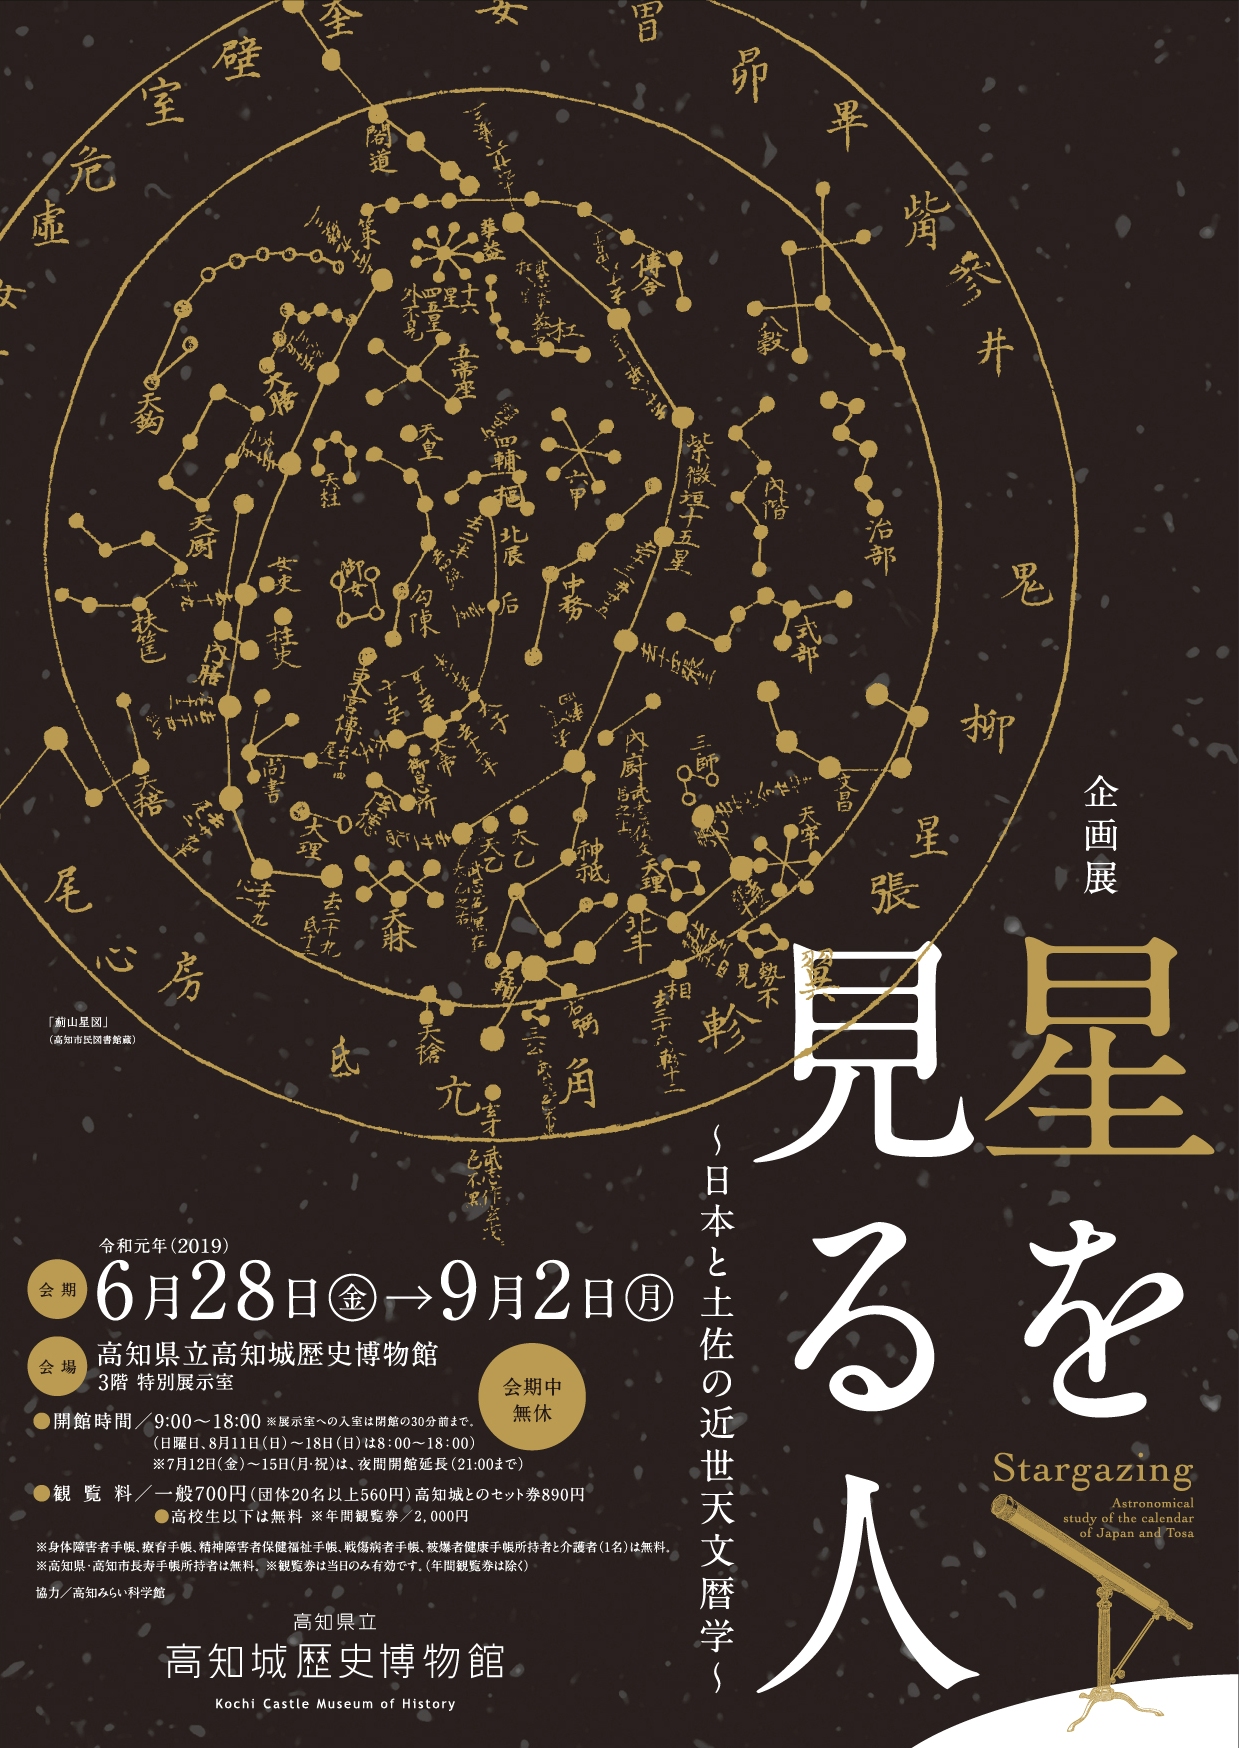 記念講演会①「近世日本の天文暦学と土佐」